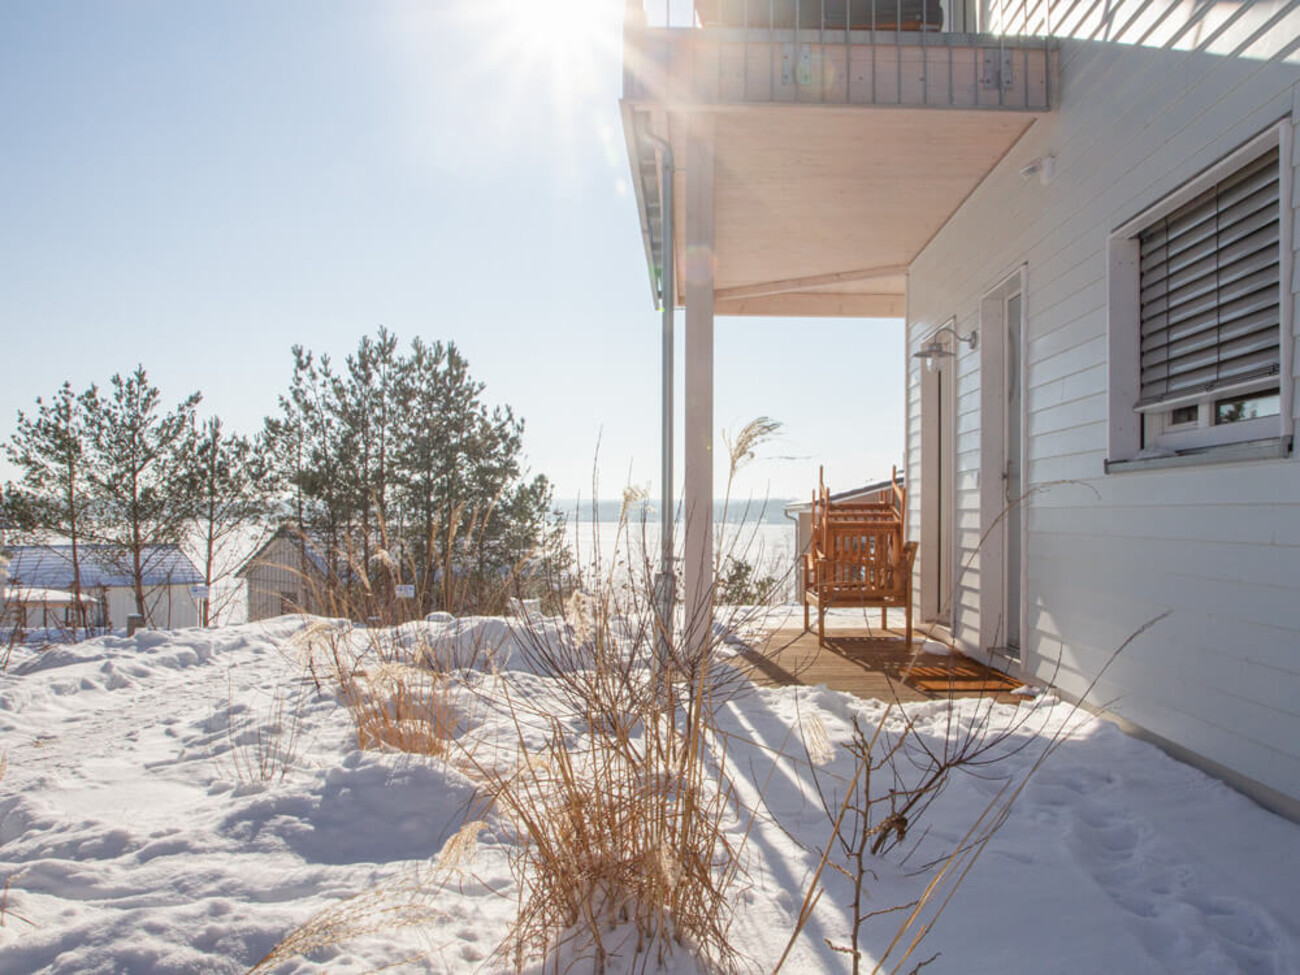 Wohnung 3: Traumhafte Schneelandschaft am Haus und der Wohnung 1 mit Blick vorbei auf den Hainer See.